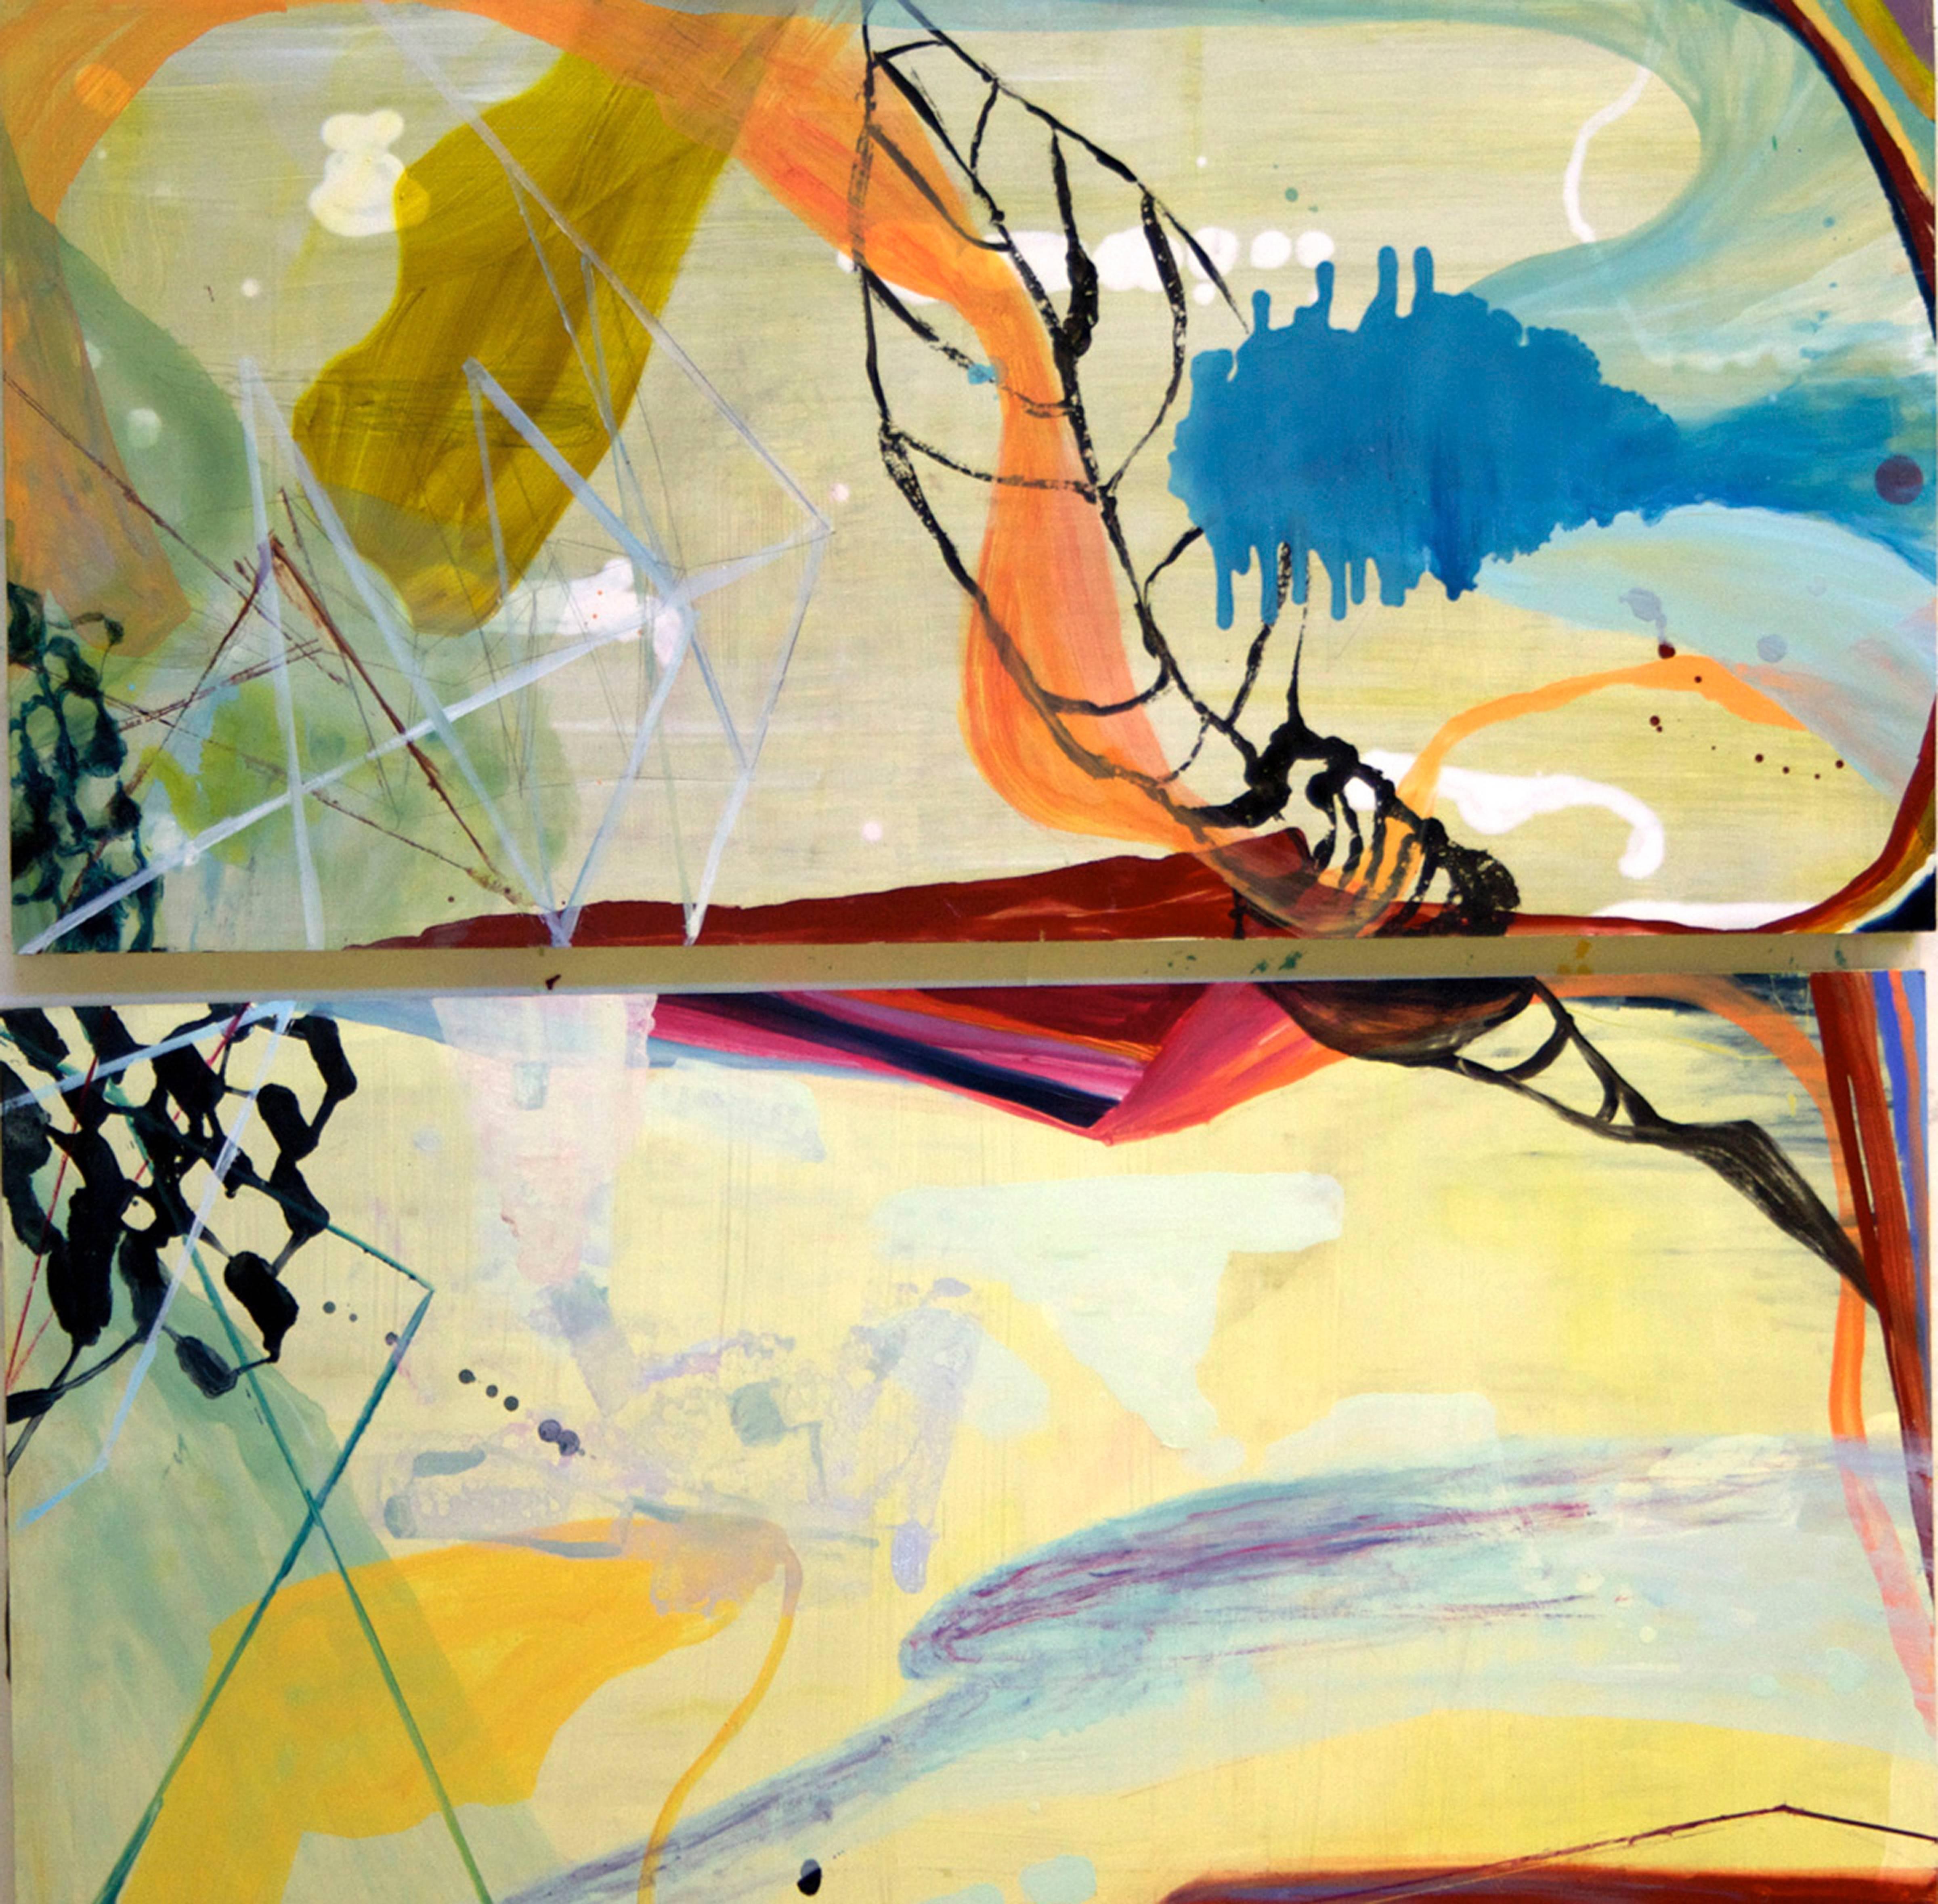 Abstract Painting Susan Sharp - ''Monde flottant''  Biomorphique/Gomtrique  Abstraction du bleu, de l'orange, du rouge et du jaune